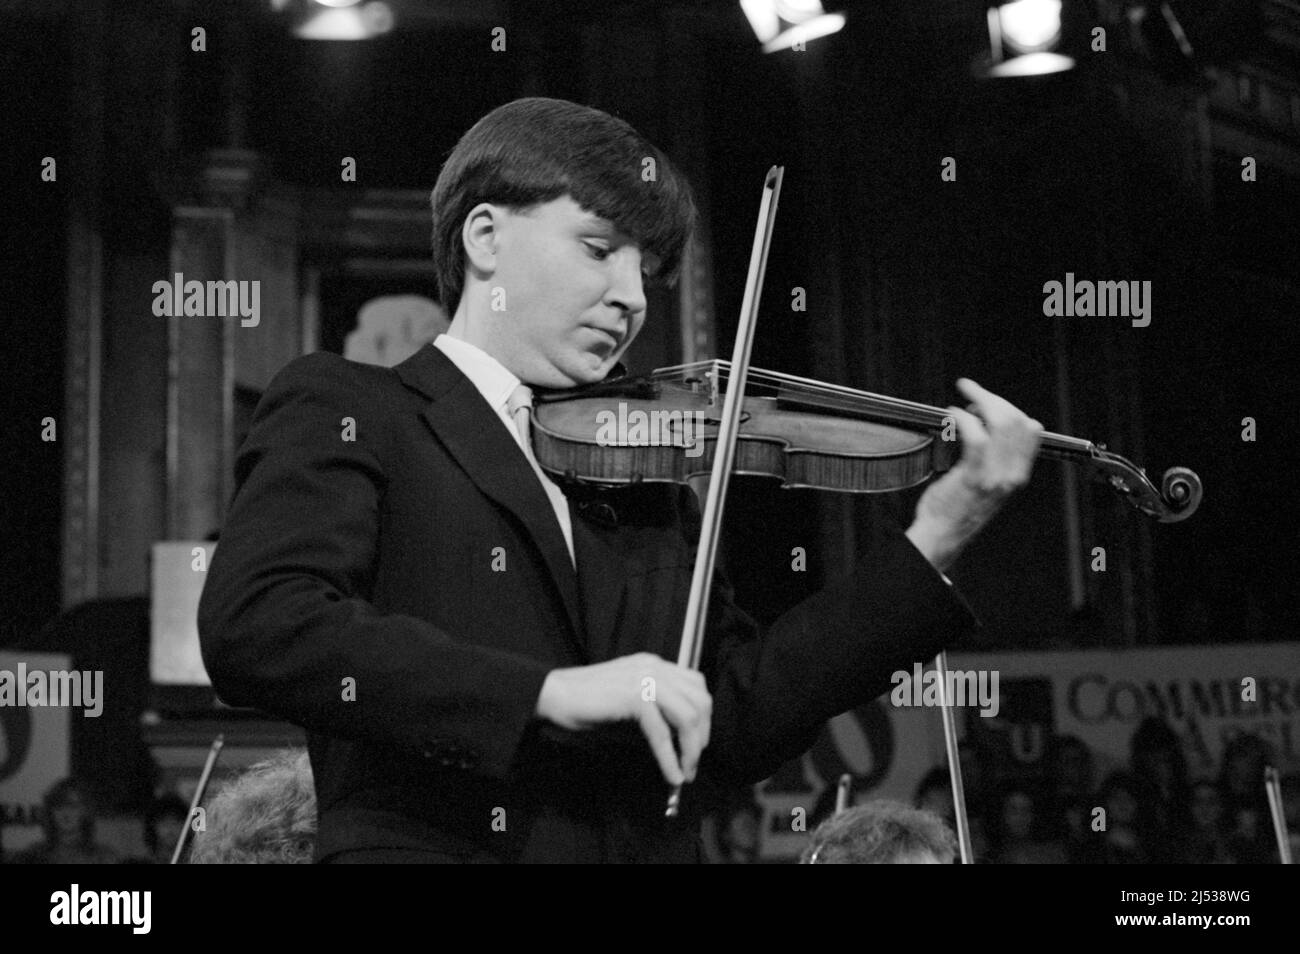 Violinista e violinista inglese Nigel Kennedy, di 28 anni, che si esibisce in uno dei concerti Schools Prom, Royal Albert Hall, Londra, Inghilterra nel 1984. Foto Stock